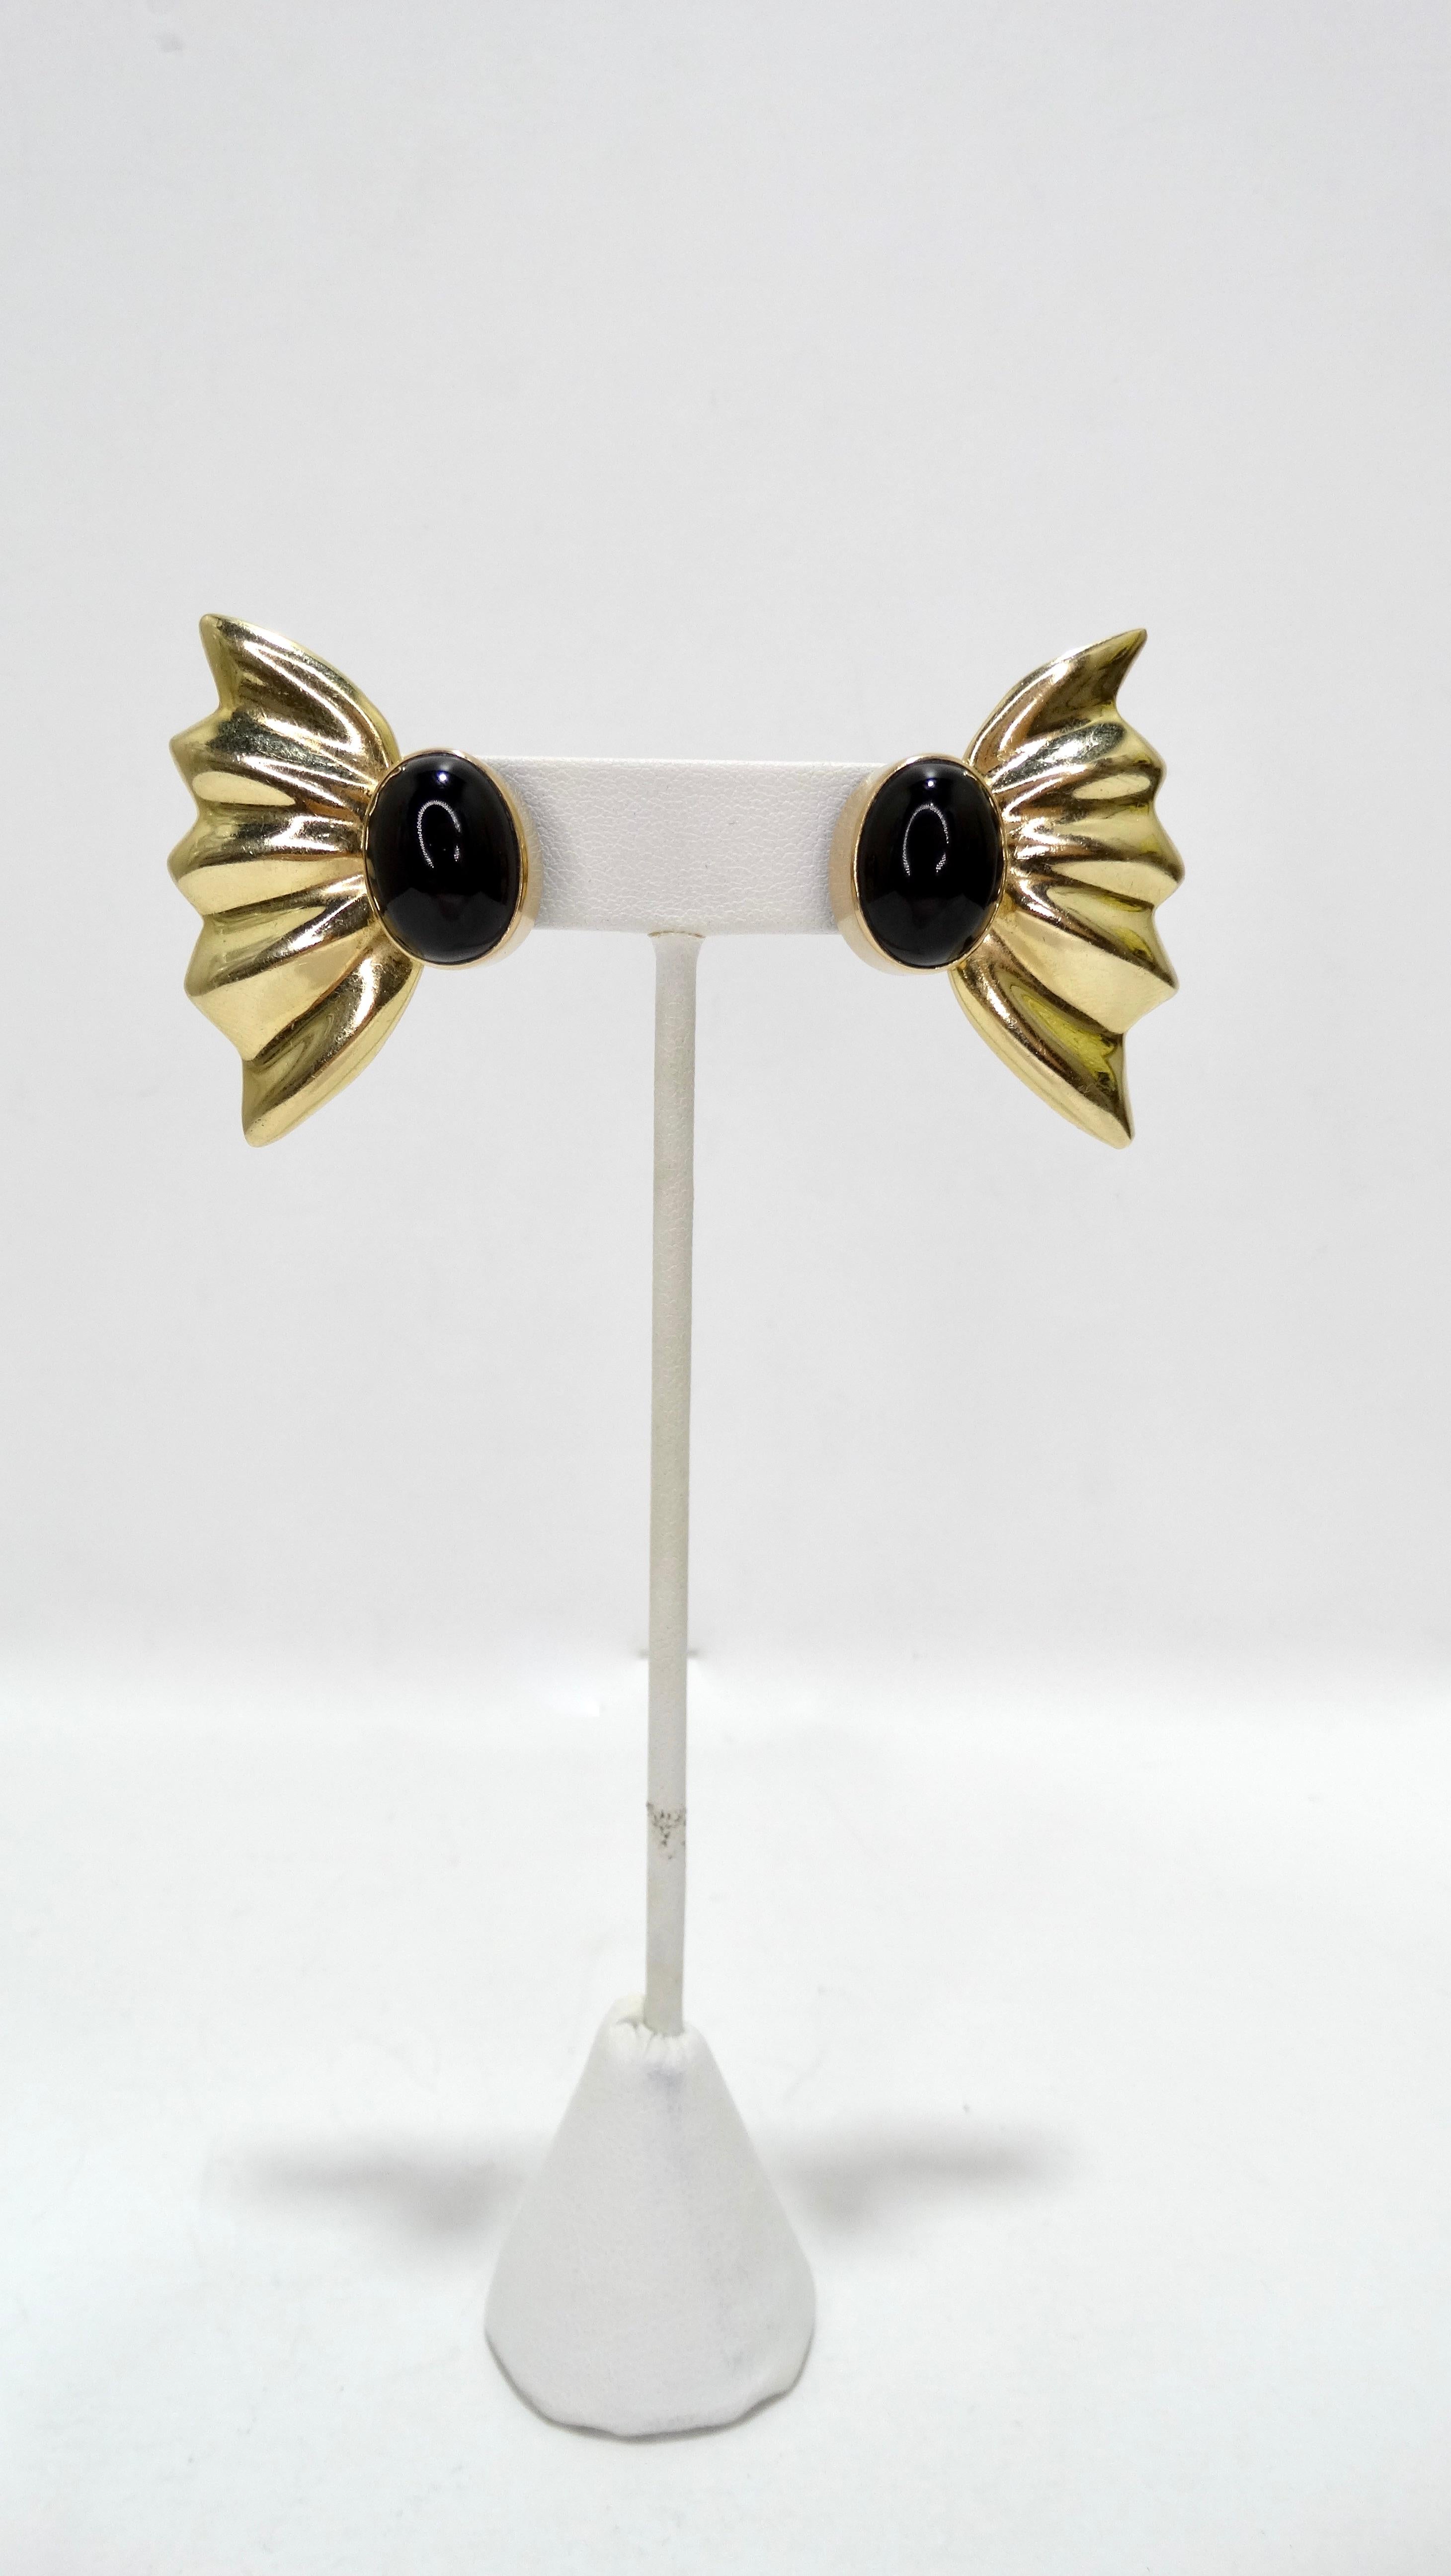 Zeitlose Ohrringe aus dem späten 20. Jahrhundert, gefertigt aus 14-karätigem Gold in einem Schmetterlingsflügel-Design mit einem oval geschliffenen Onyx-Stein. Durchbrochene Verschlüsse mit Hebelverschluss, gestempelt mit 14k und 'JB'. Diese